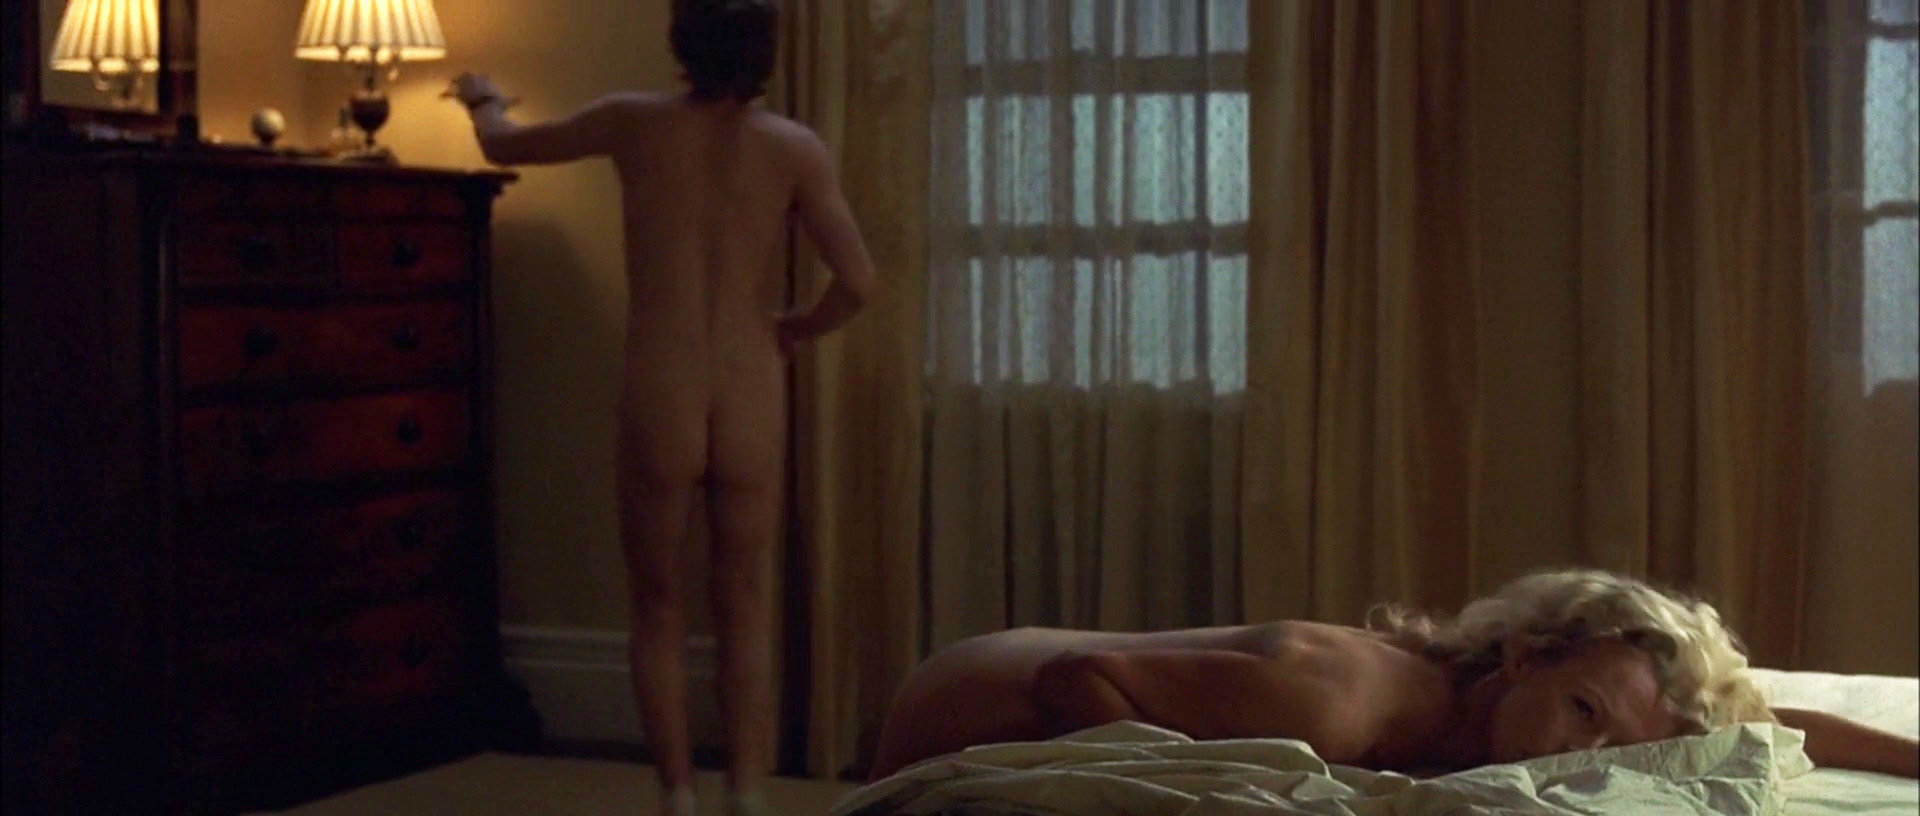 Watch Online Kim Basinger The Door In The Floor 2004 Hd 1080p